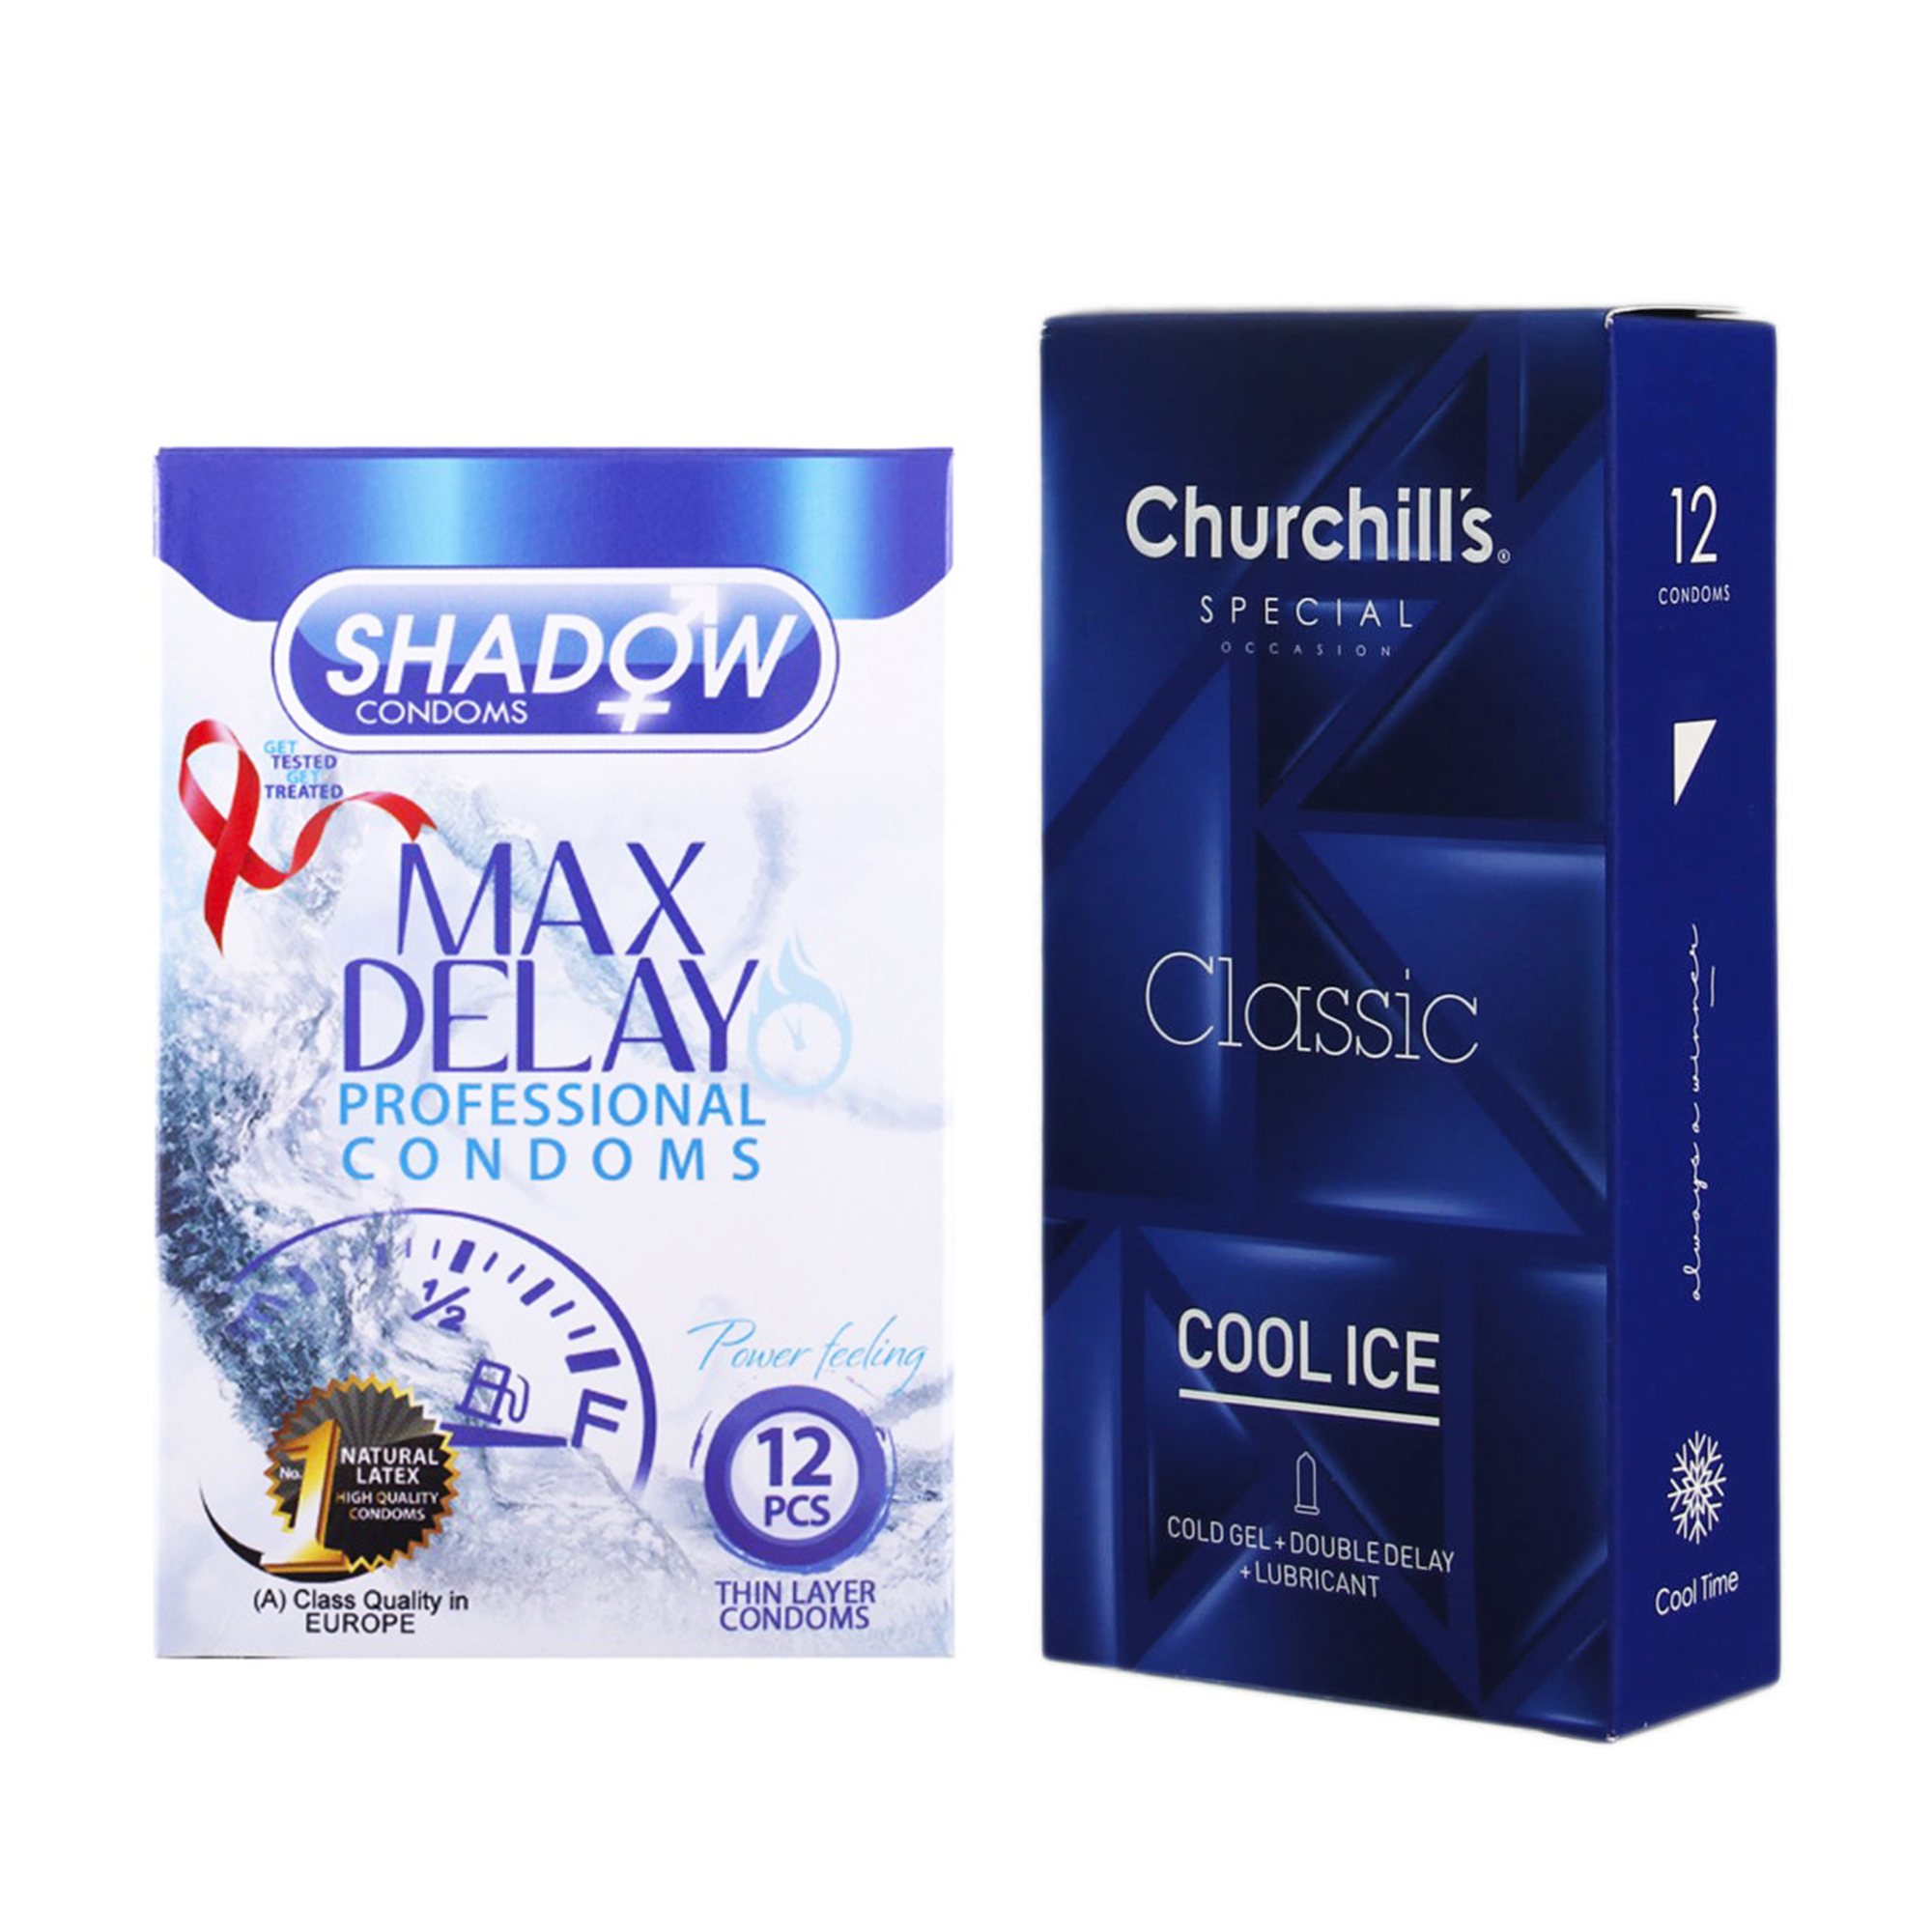 کاندوم چرچیلز مدل Cool Ice بسته 12 عددی به همراه کاندوم شادو مدل Max Delay بسته 12 عددی